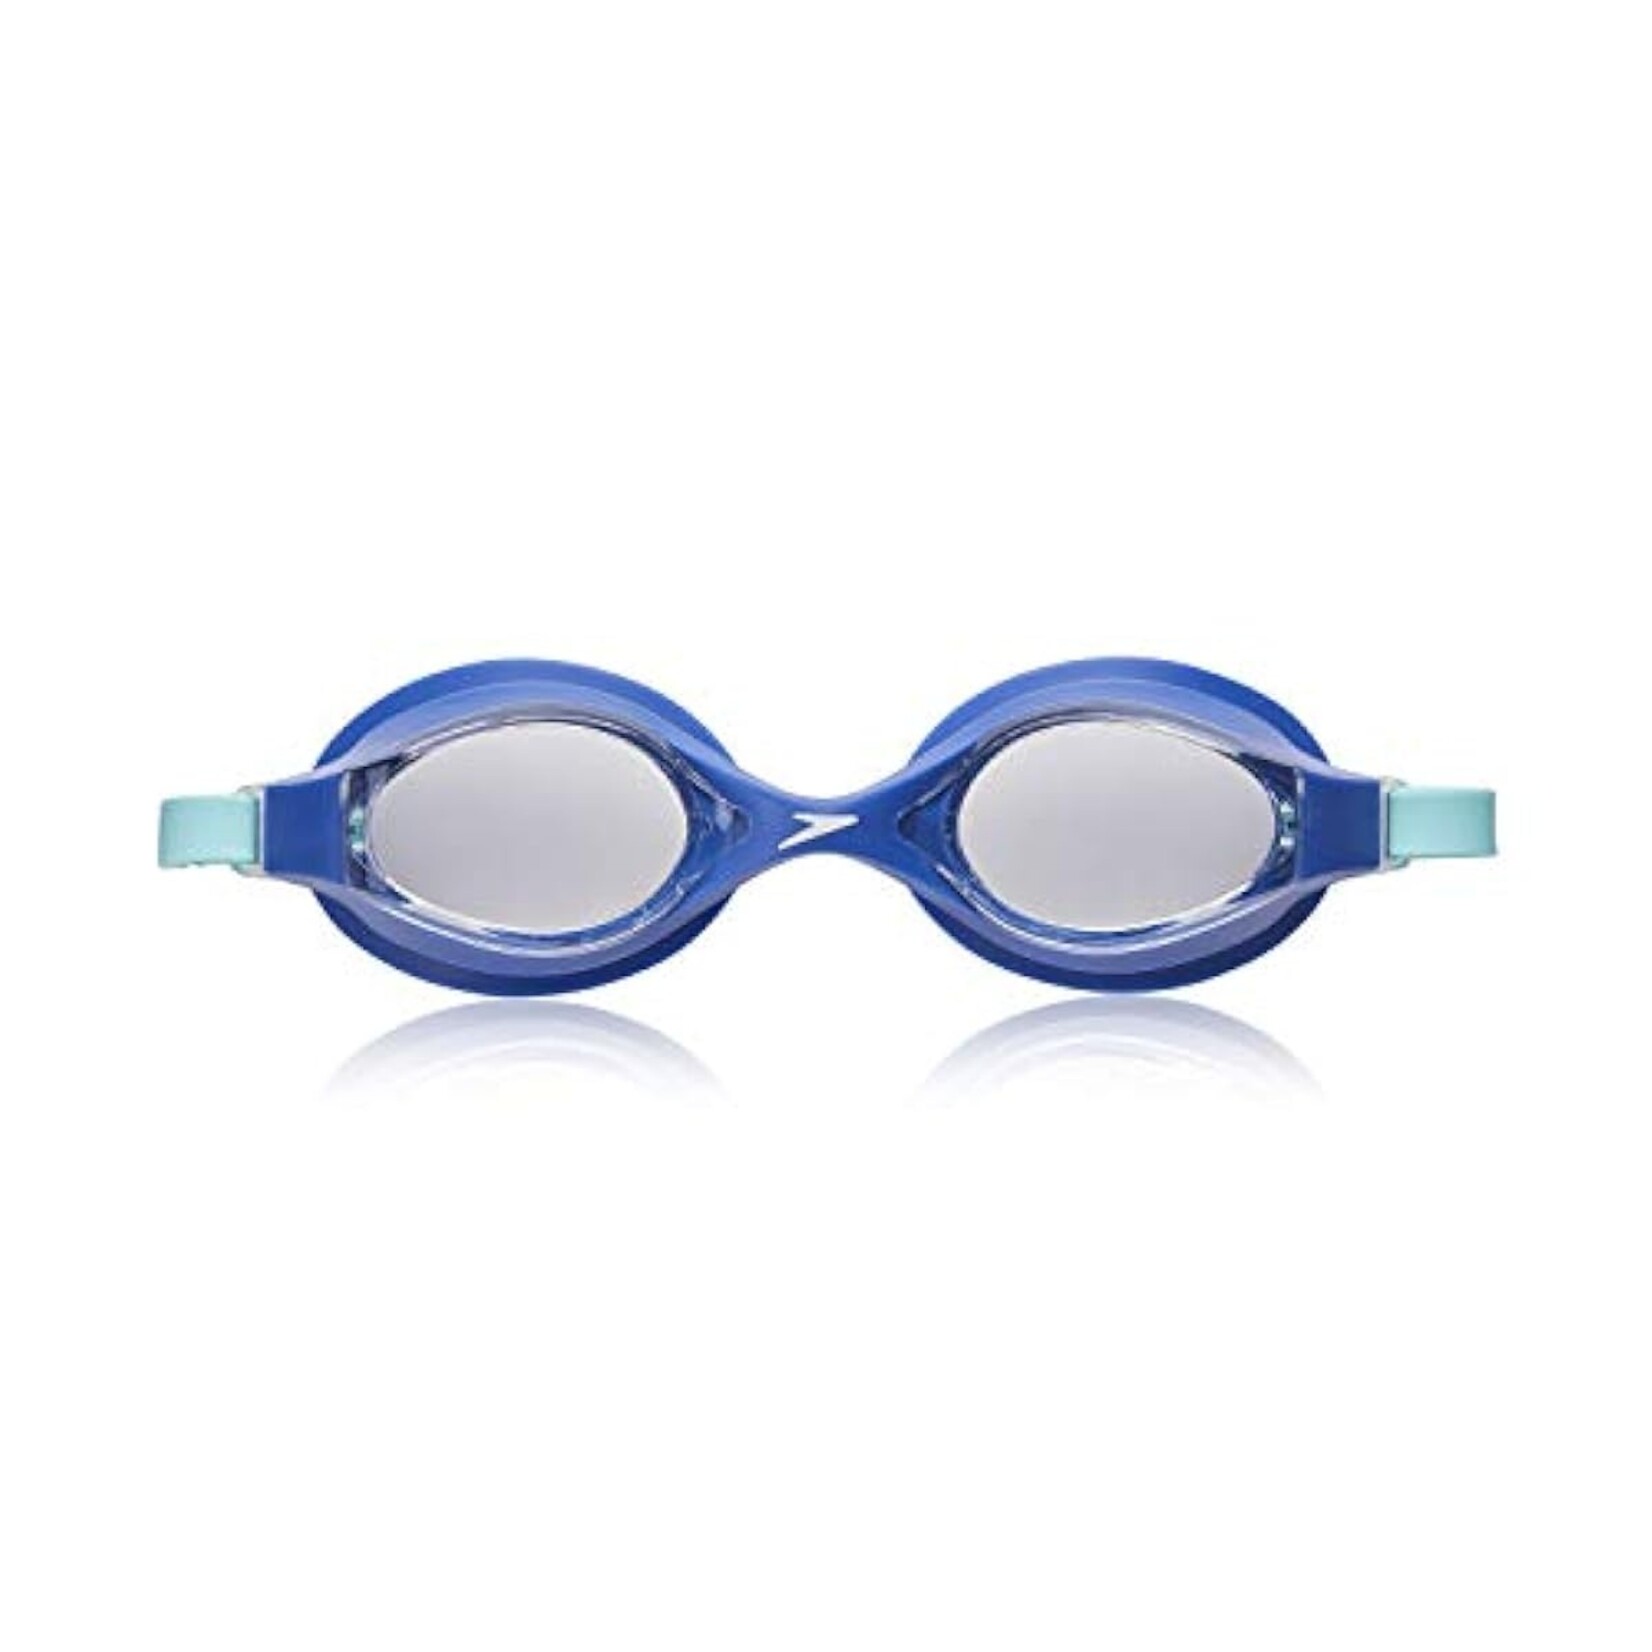 Speedo Speedo Super Flyer Goggle Blue/Clear